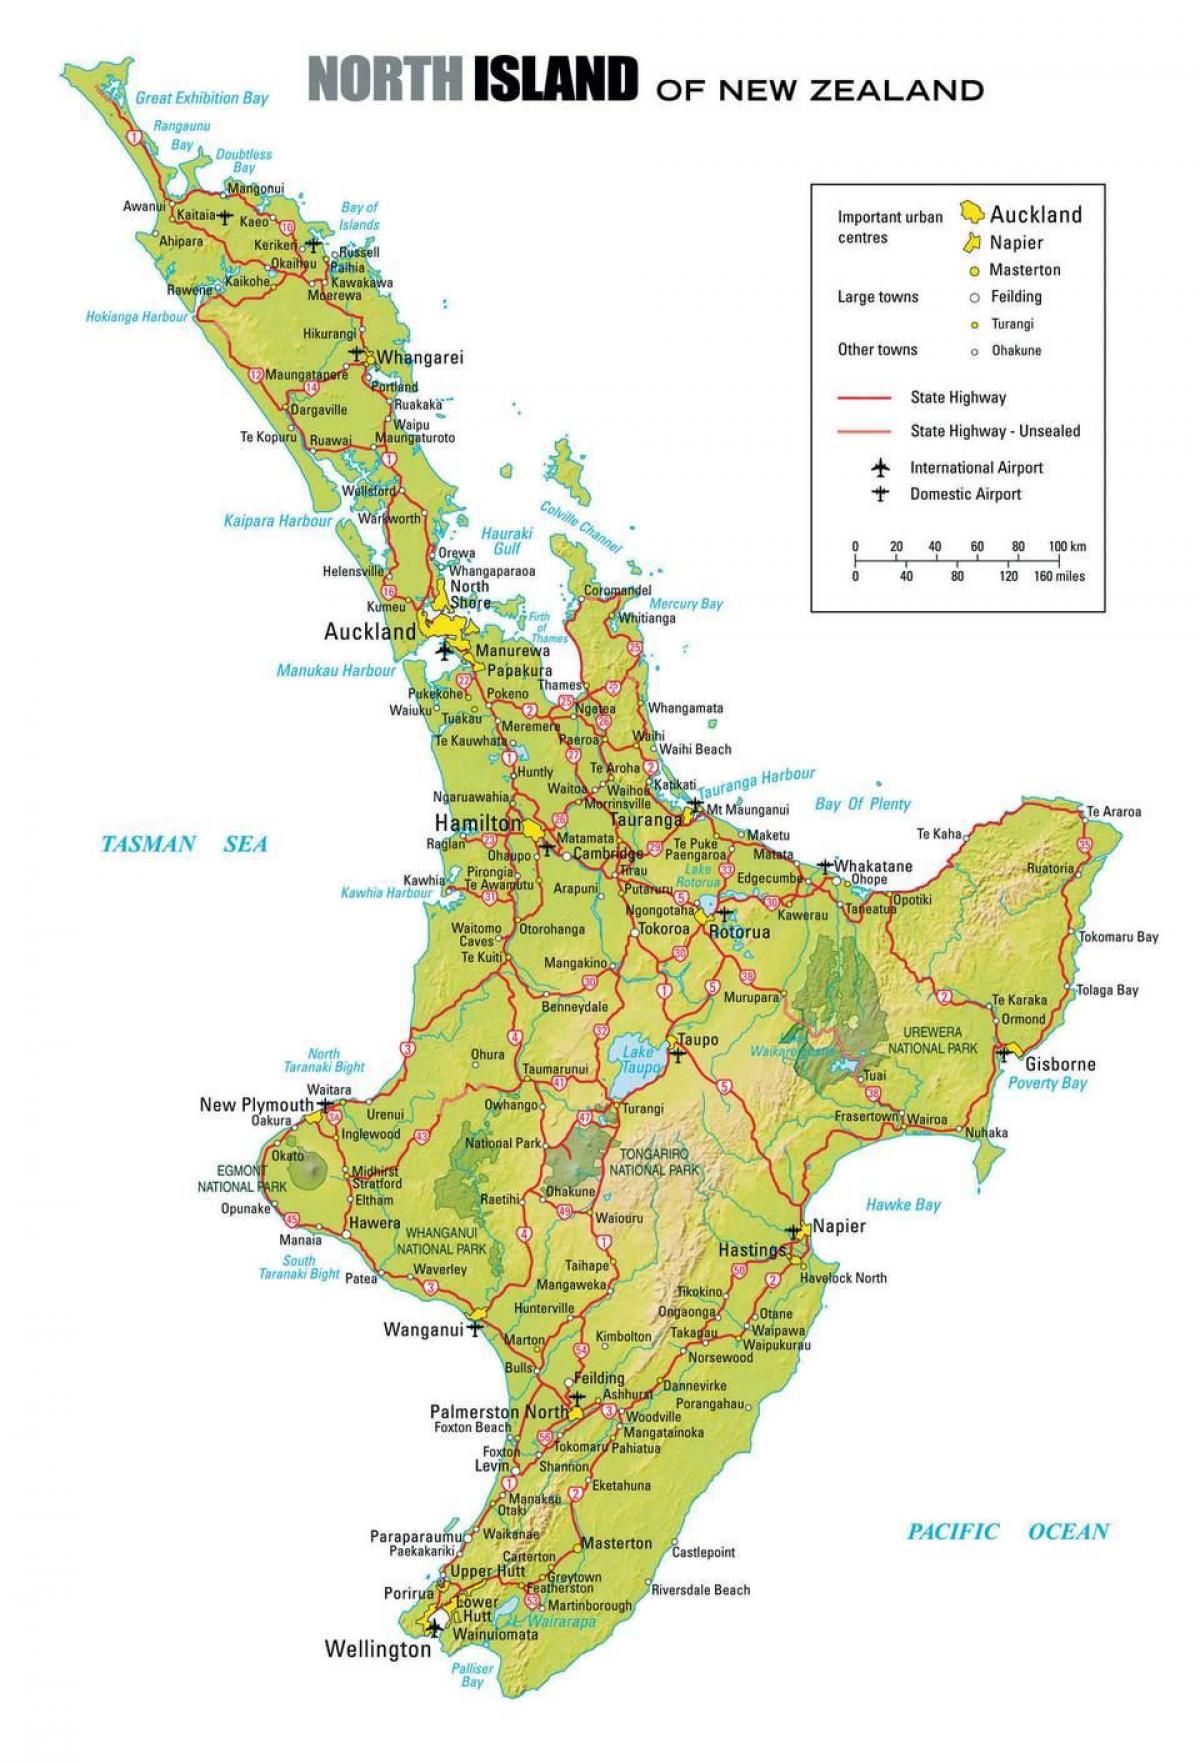 քարտեզ հյուսիսային մասում Նոր Զելանդիայում